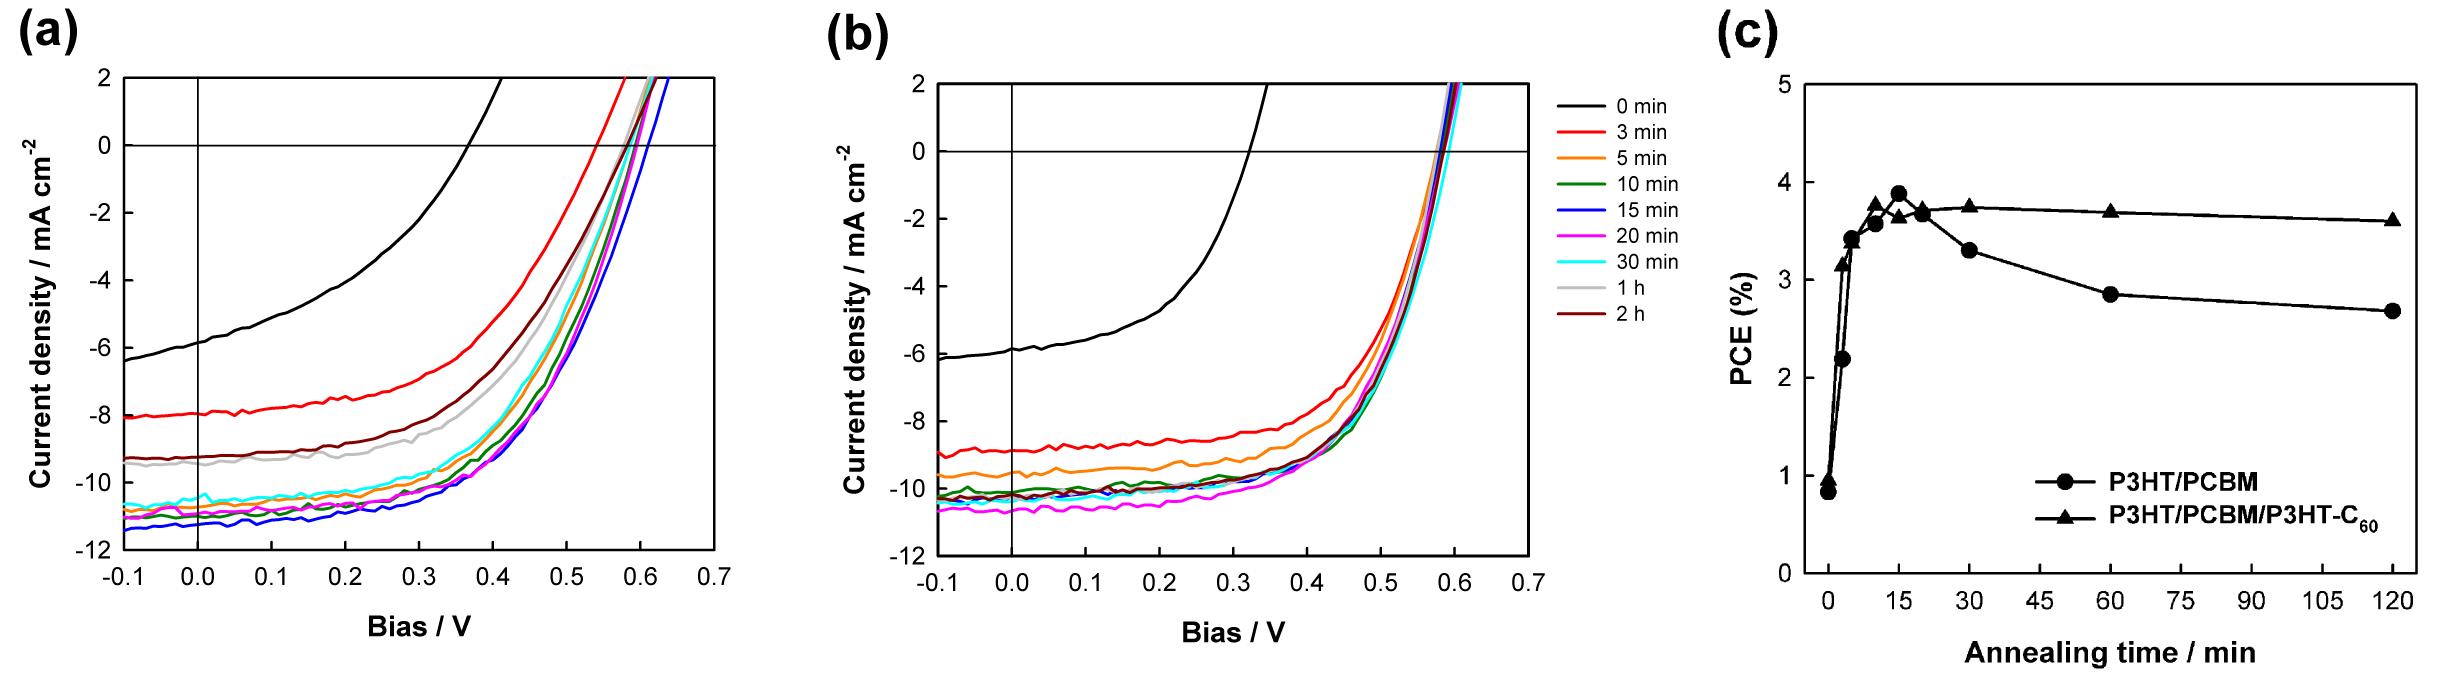 (a) 표준 P3HT/PCBM 소자와 (b) P3HT-C60이 2.5 wt%첨가된 소자의 J-V 곡선. (c)각 소자의 열처리 시간에 따른 전력변환효율의 변화.